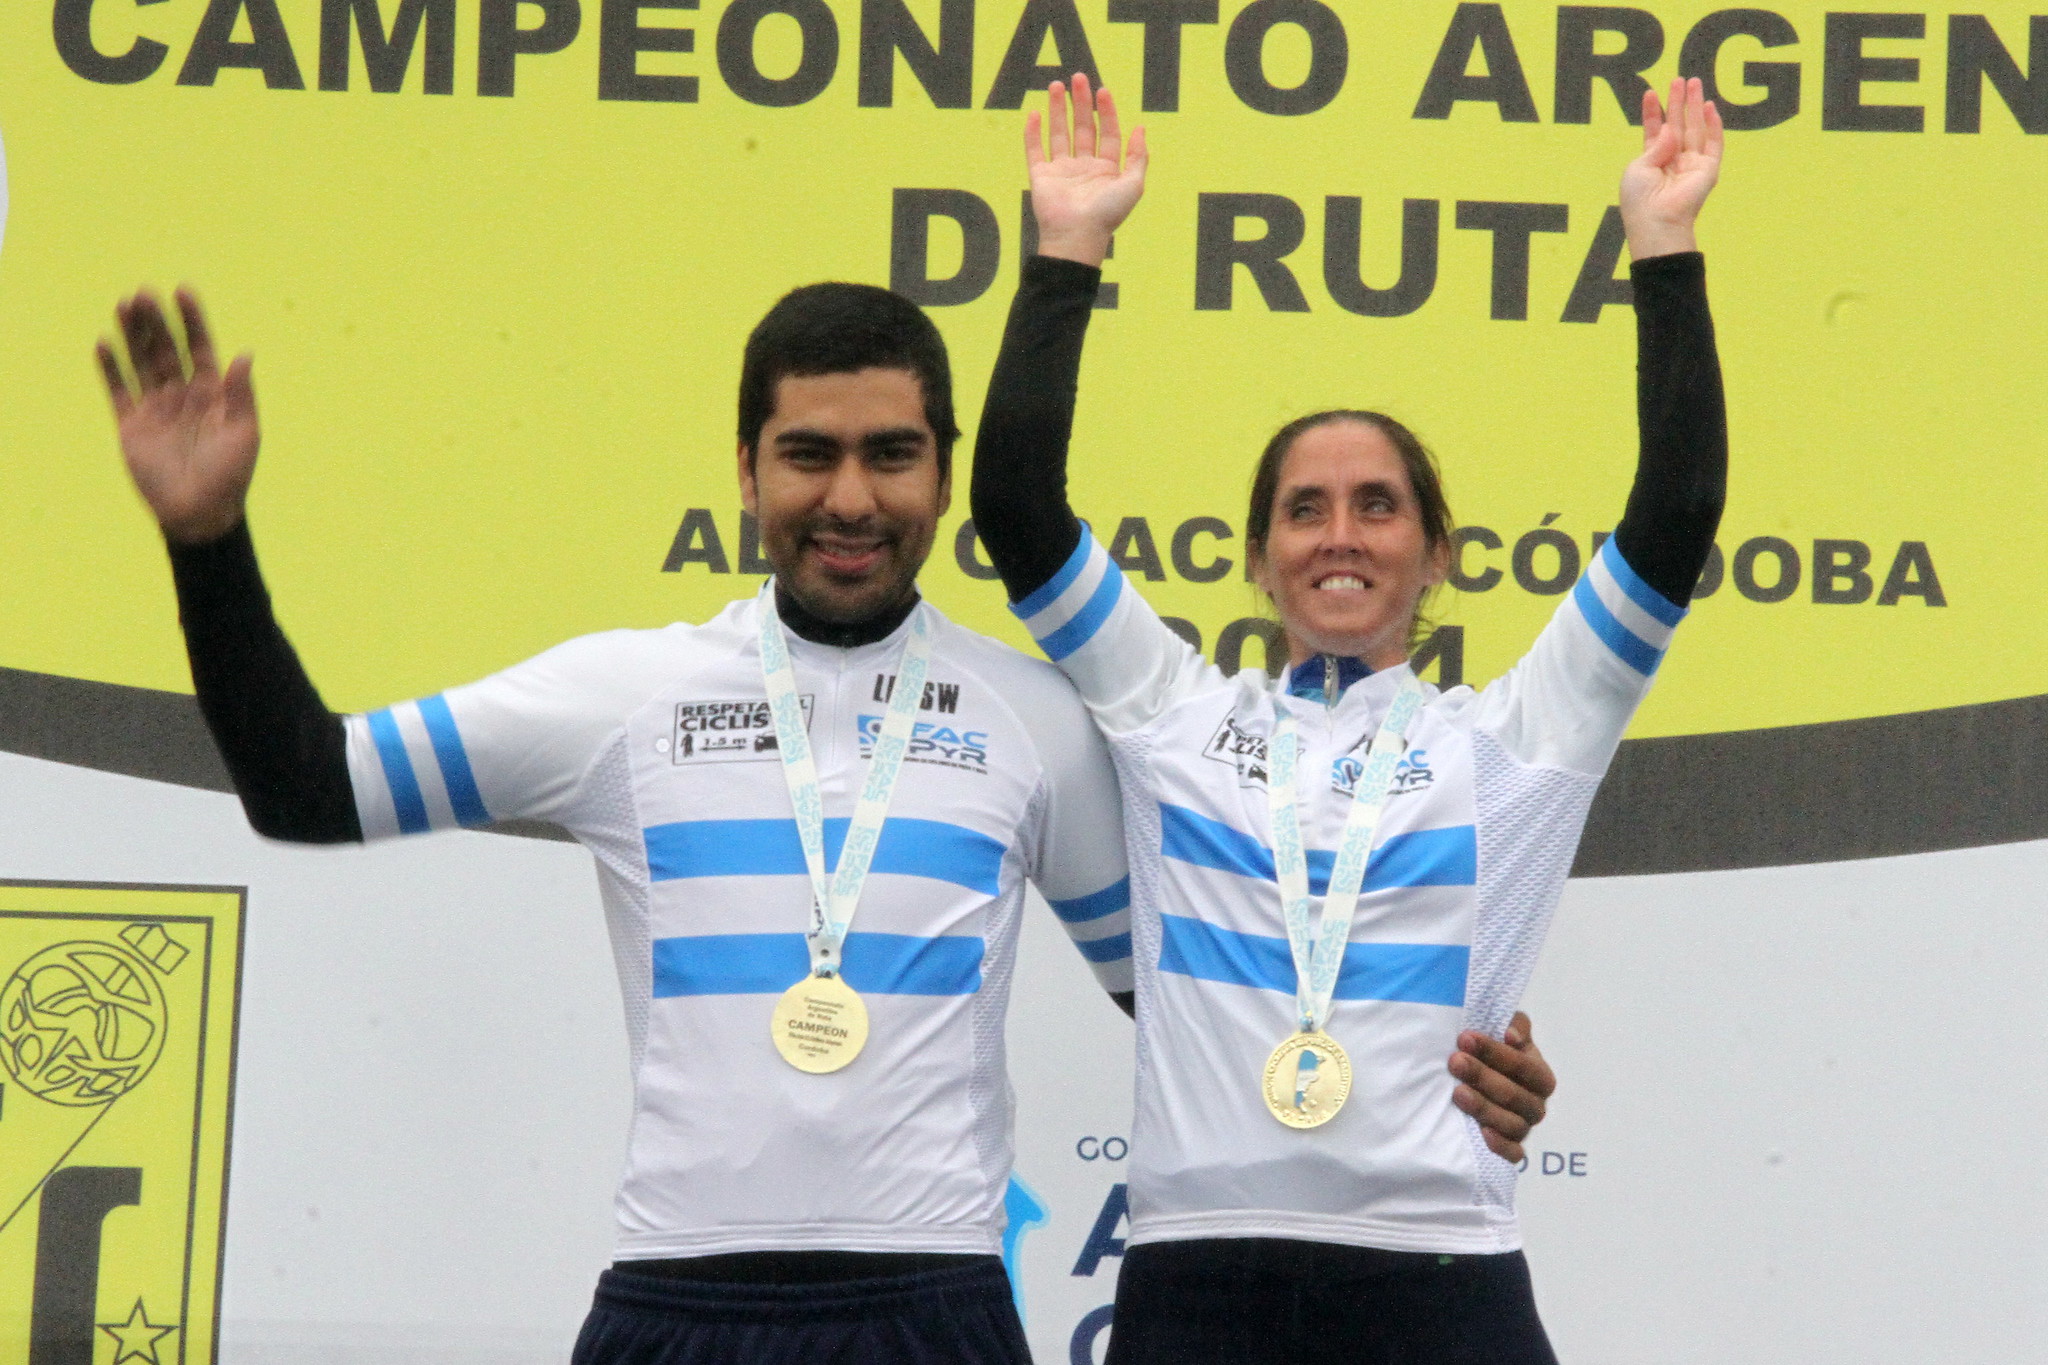 Majo Quiroga, empleada legislativa y deportista que obtuvo el oro en el Campeonato Argentino de Ruta